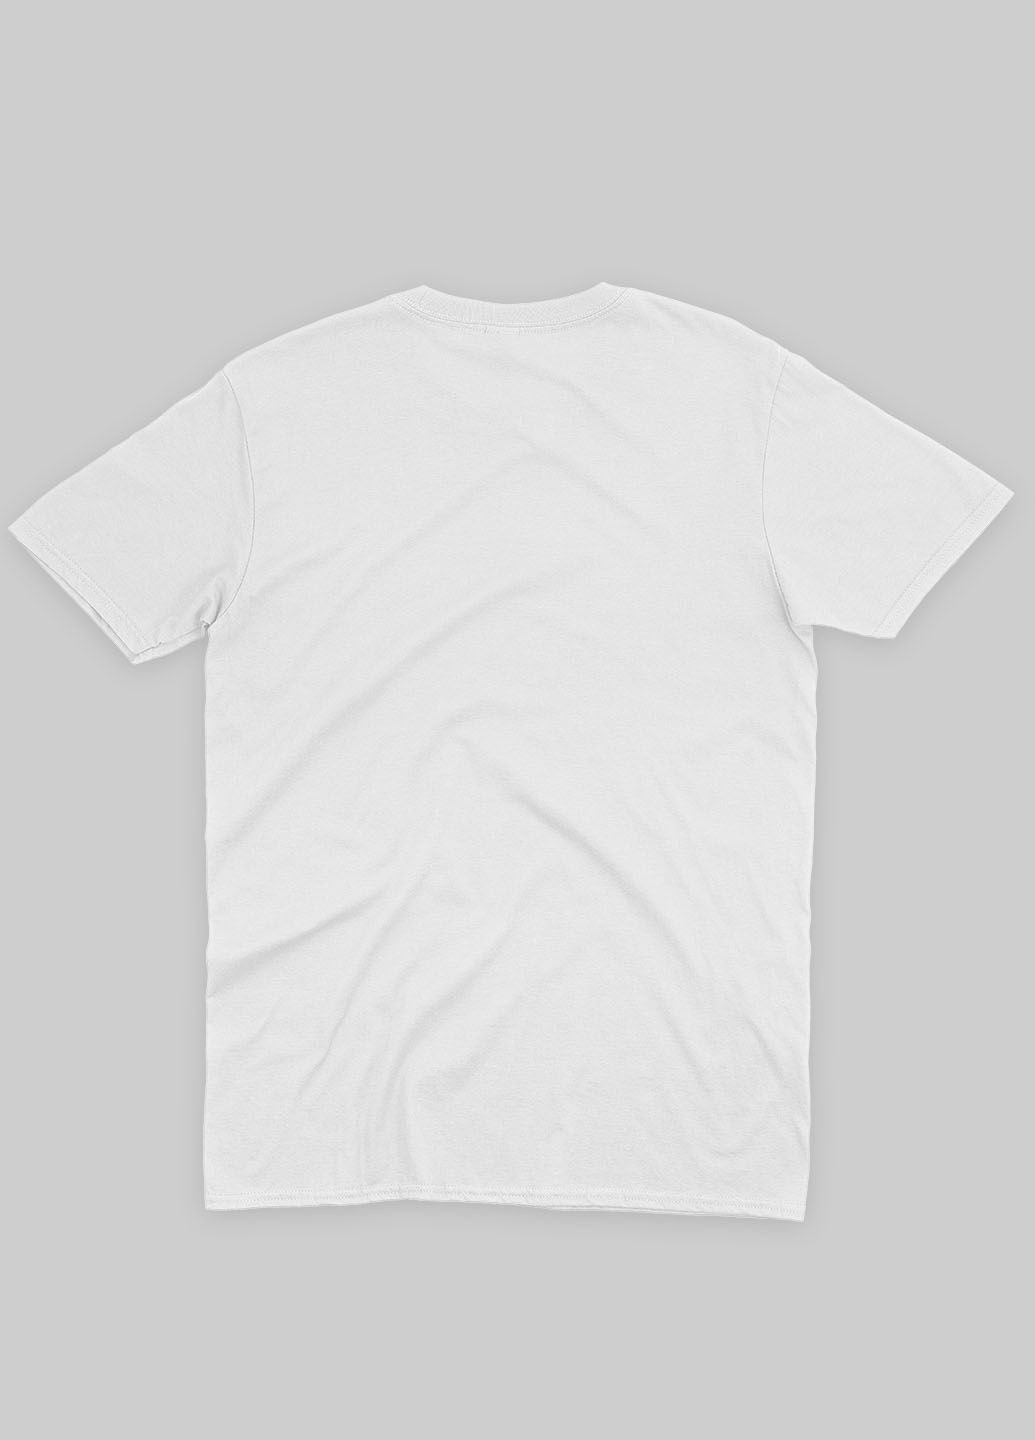 Белая демисезонная футболка для мальчика с принтом супергероями - мстители (ts001-1-whi-006-025-005-b) Modno